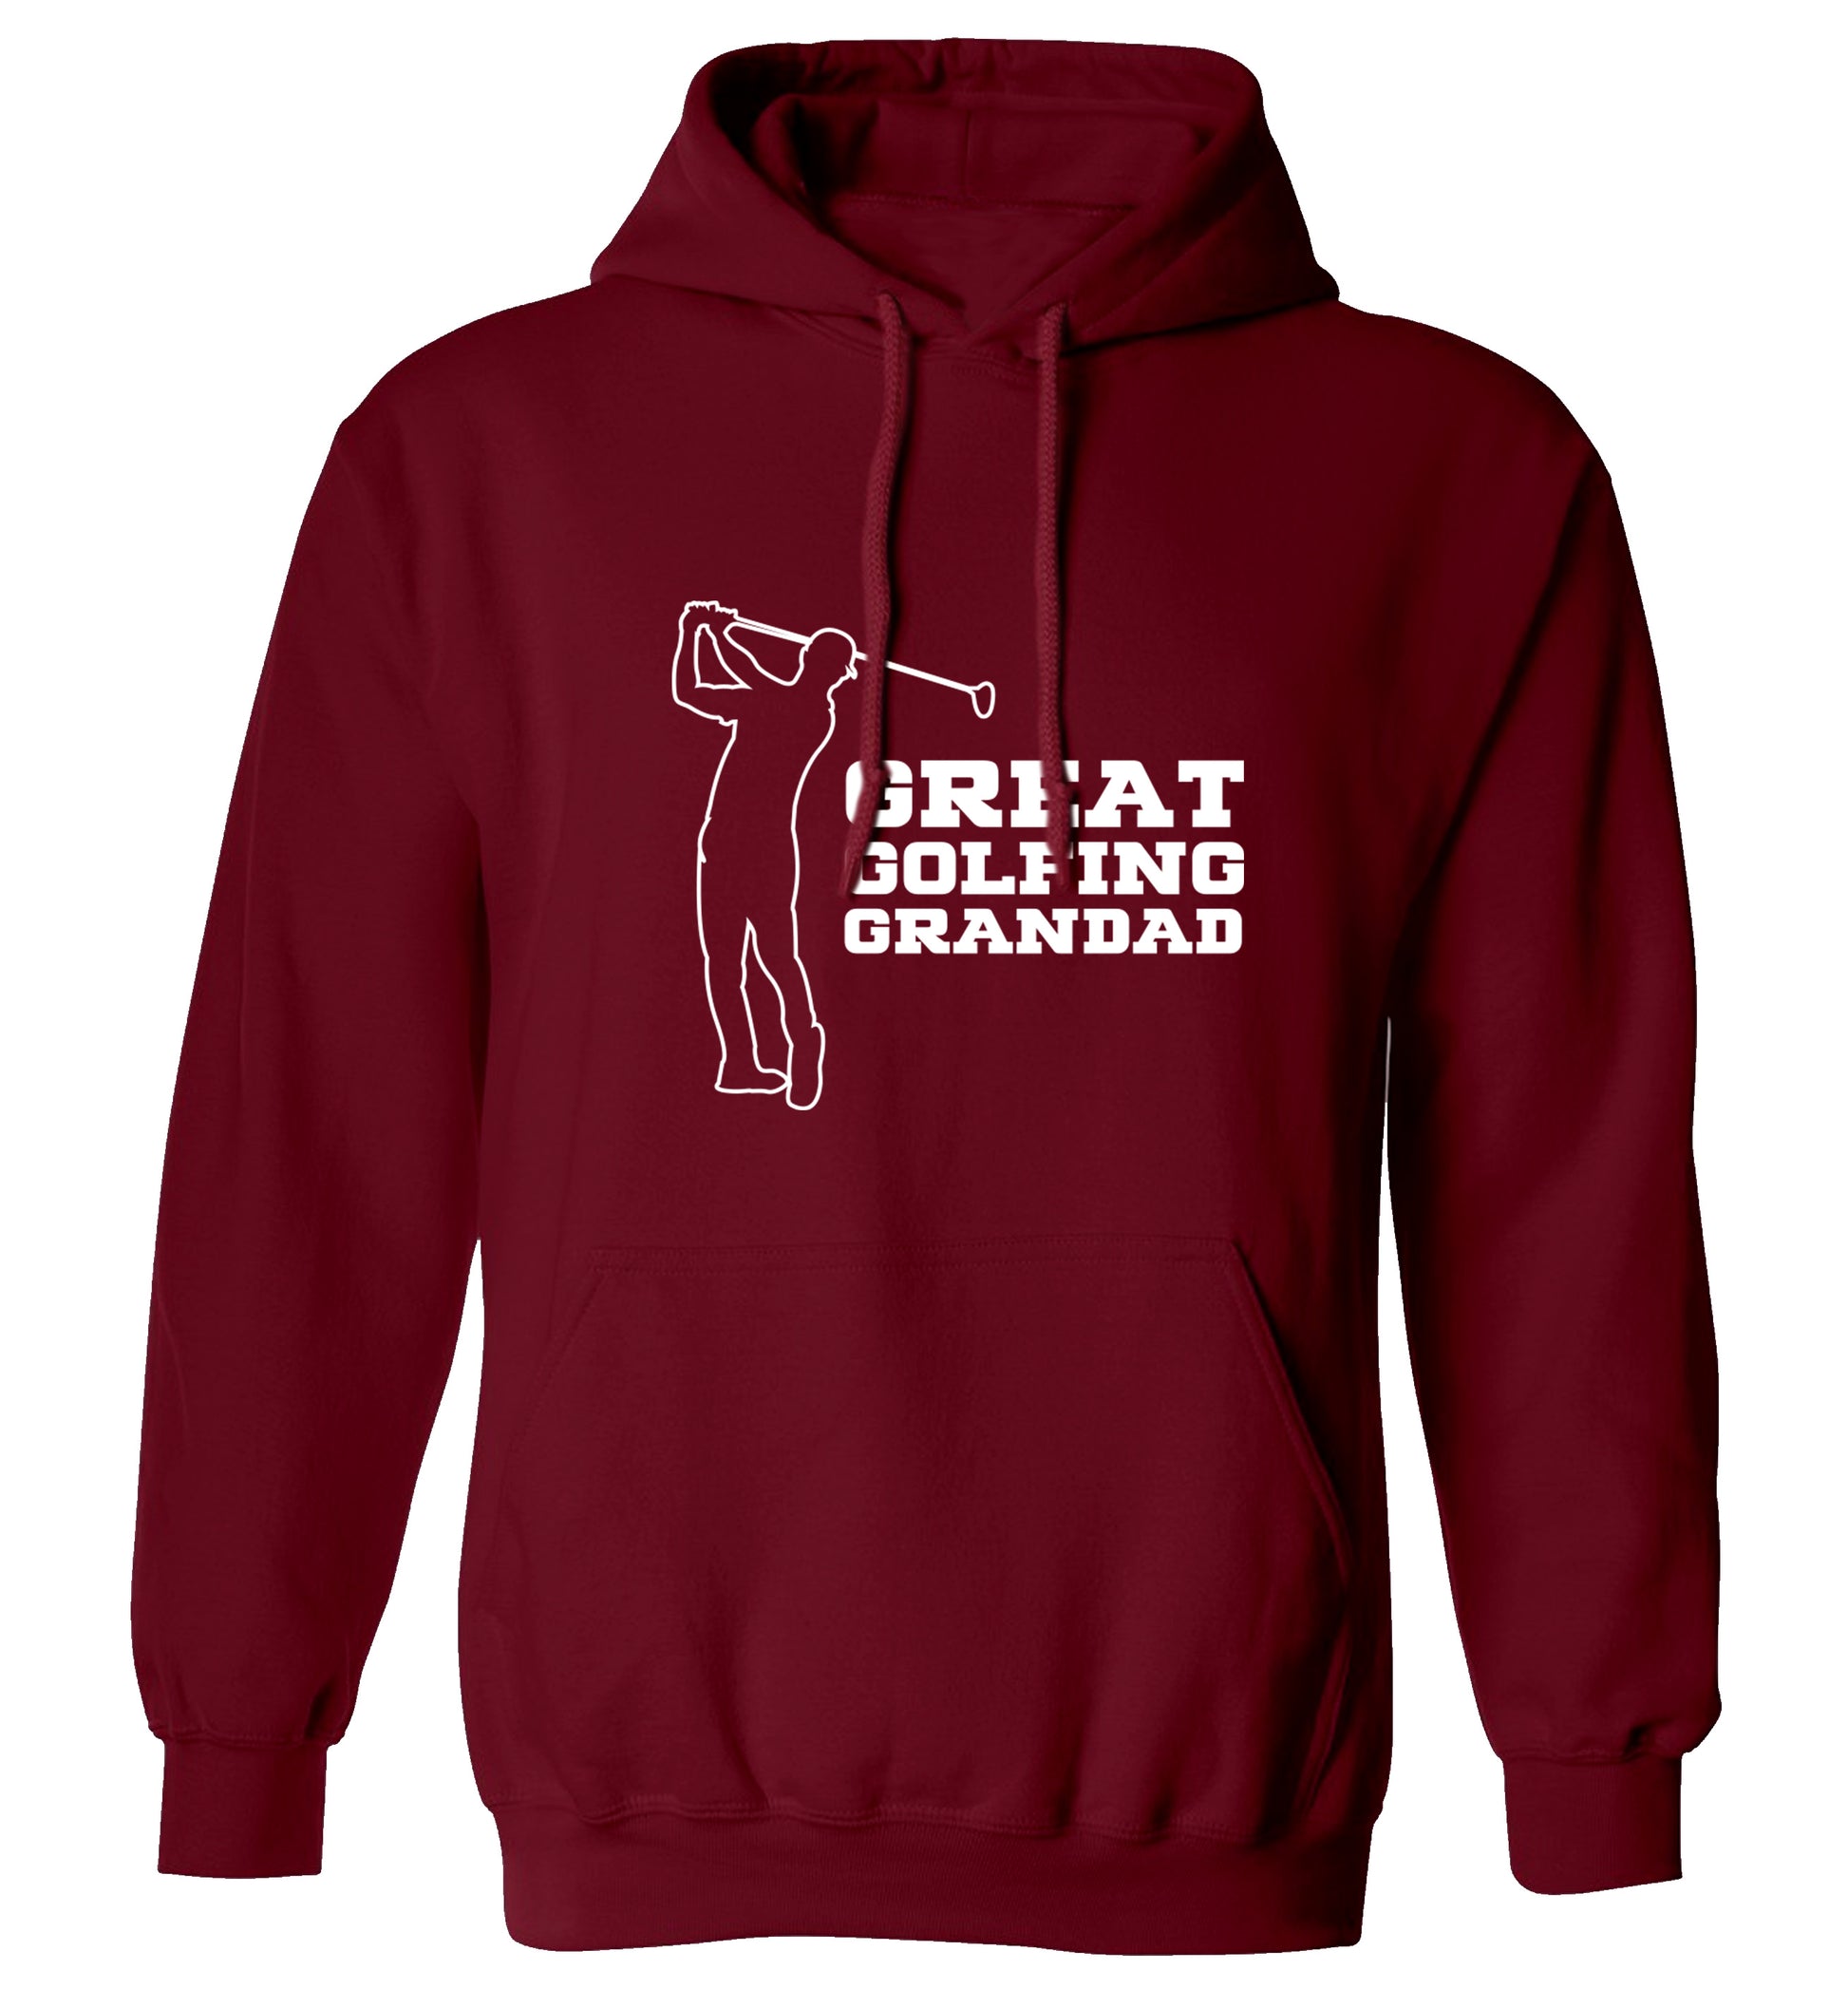 Great Golfing Grandad adults unisex maroon hoodie 2XL